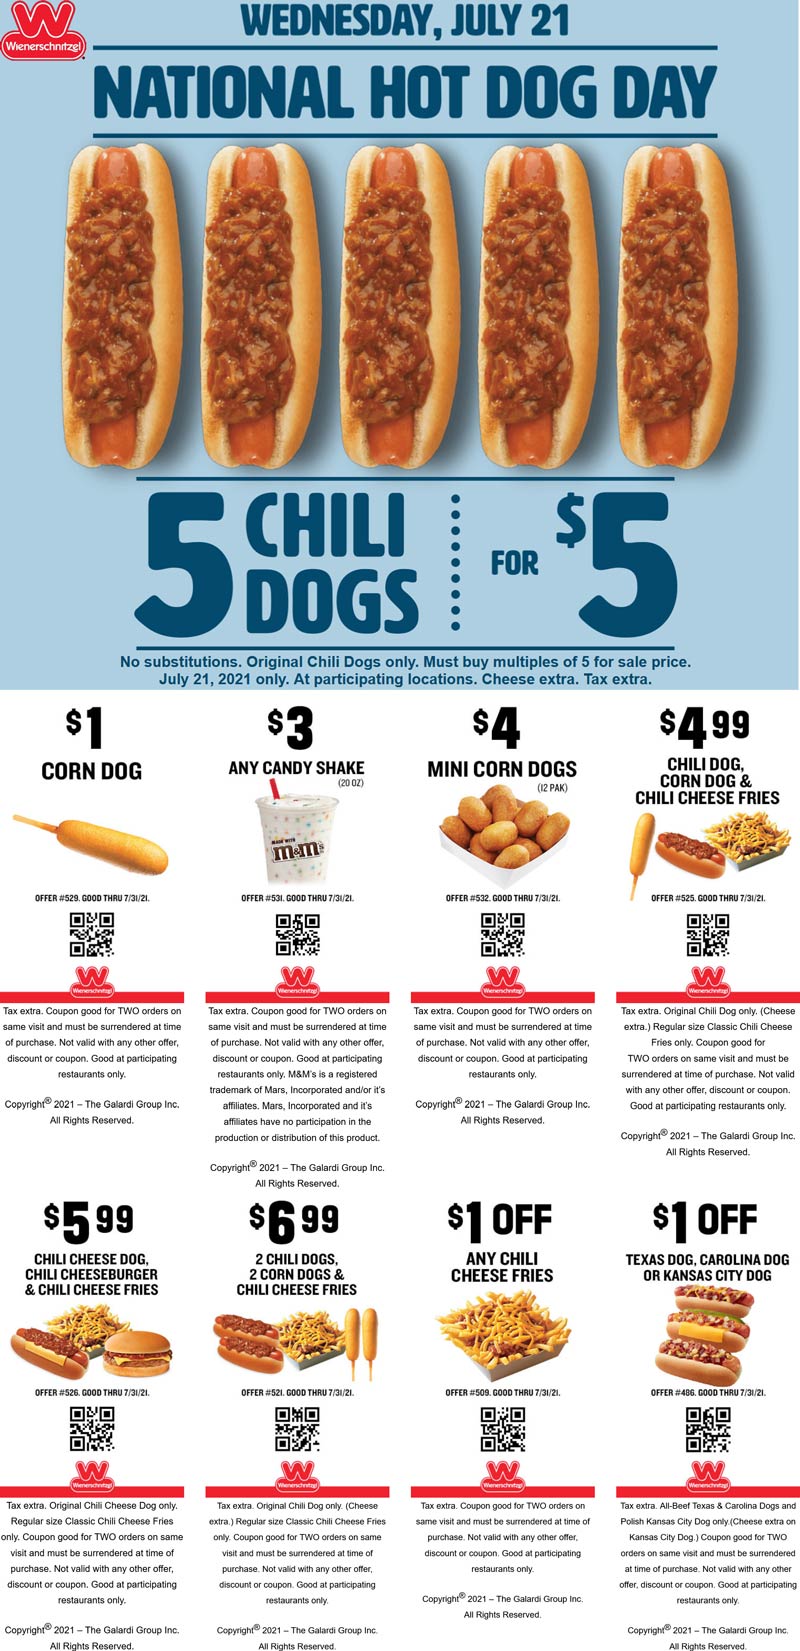 Wienerschnitzel restaurants Coupon  5 chili dogs for $5 & more Wednesday at Wienerschnitzel restaurants #wienerschnitzel 